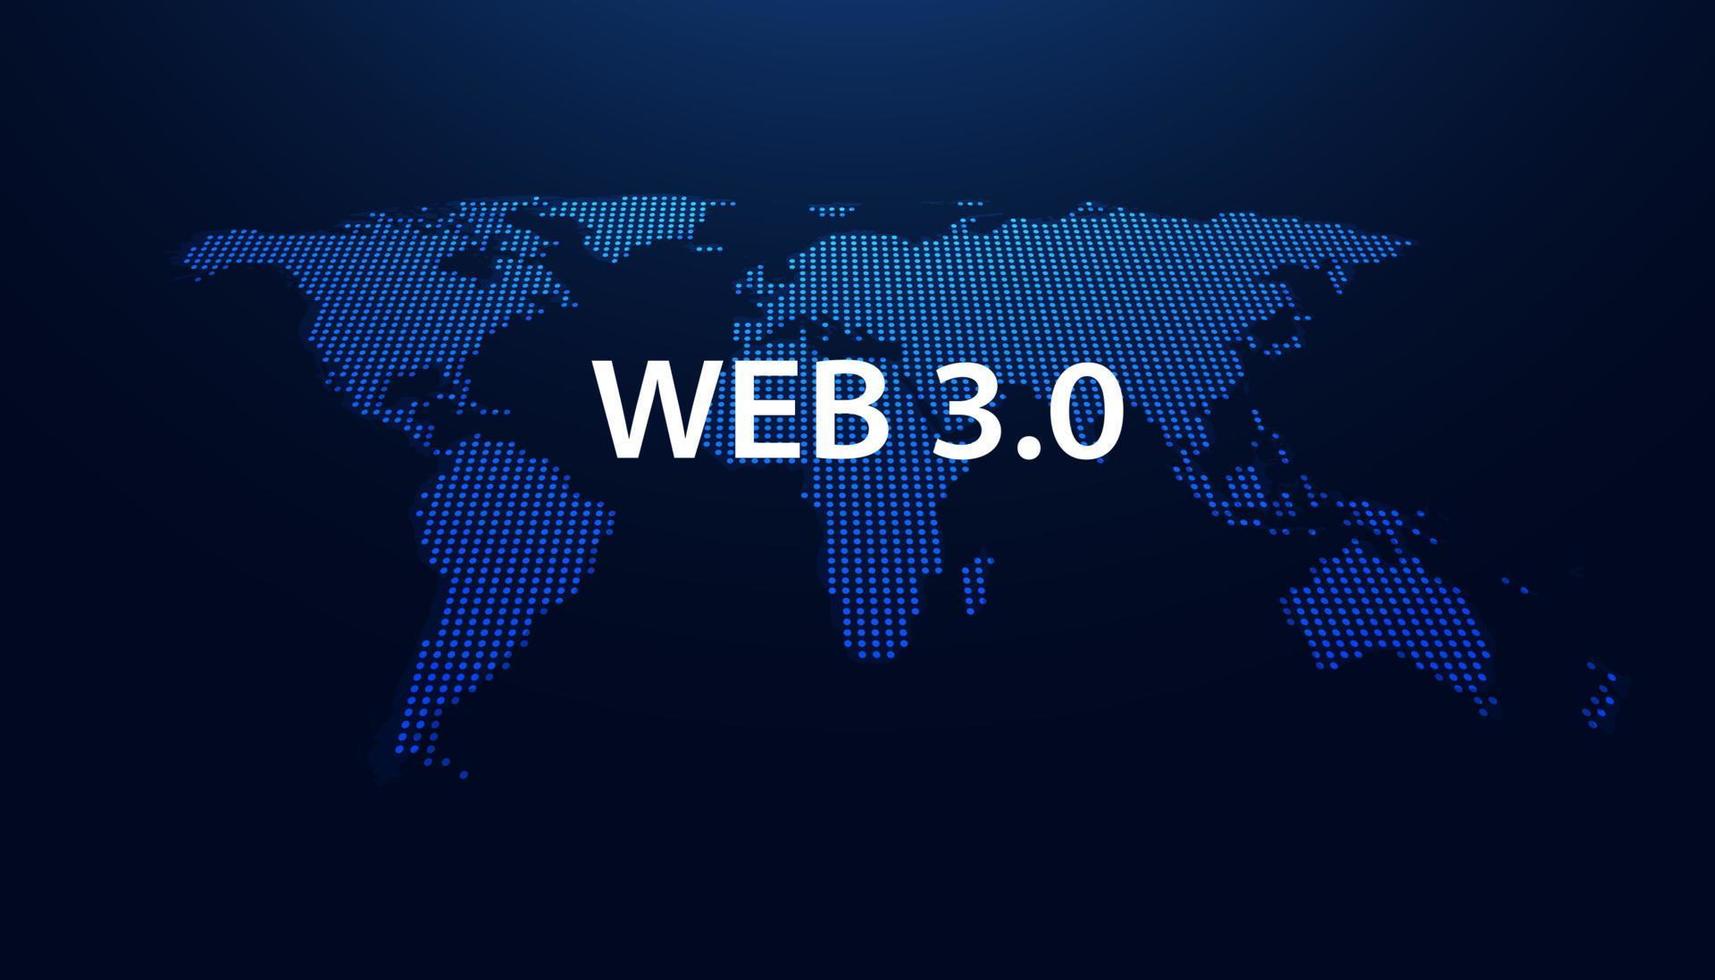 tecnologia de mapa abstrato pontos azuis conceito moderno da web 3.0 é o acesso gratuito a informações ou serviços sem intermediários para controle e censura. vetor